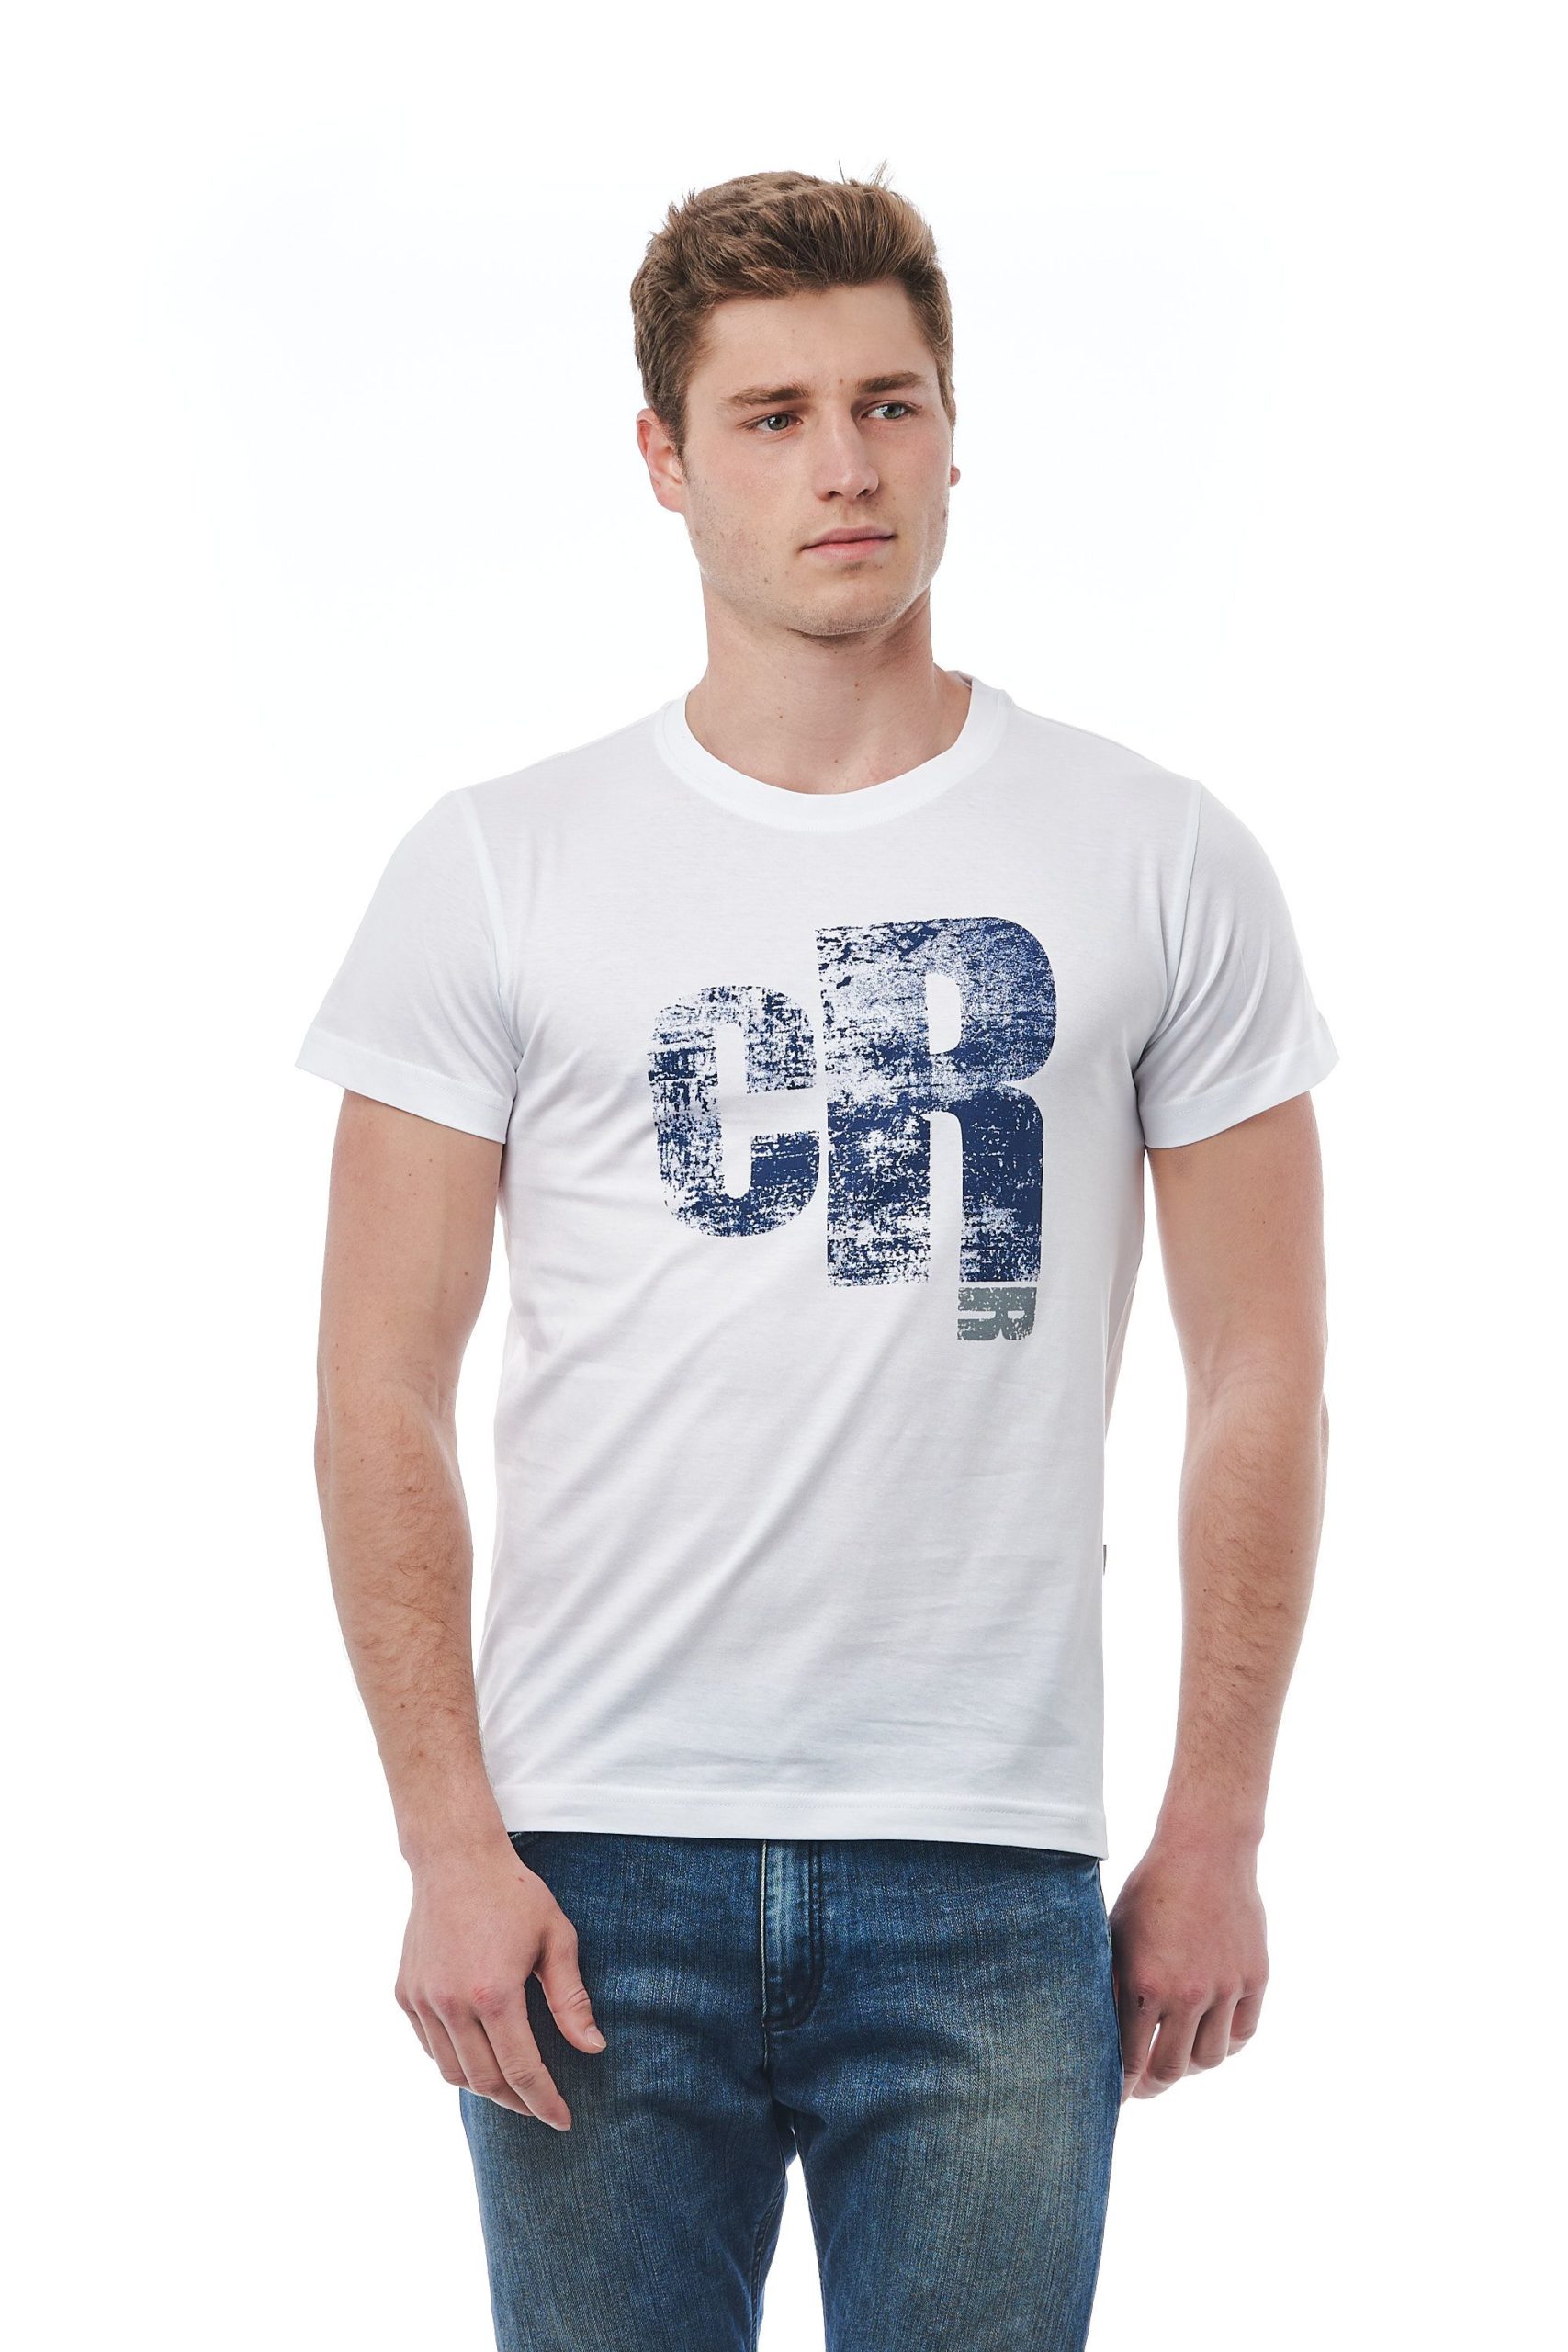 Cerruti 1881 Men's Bianco T-Shirt White CE1410072 - L